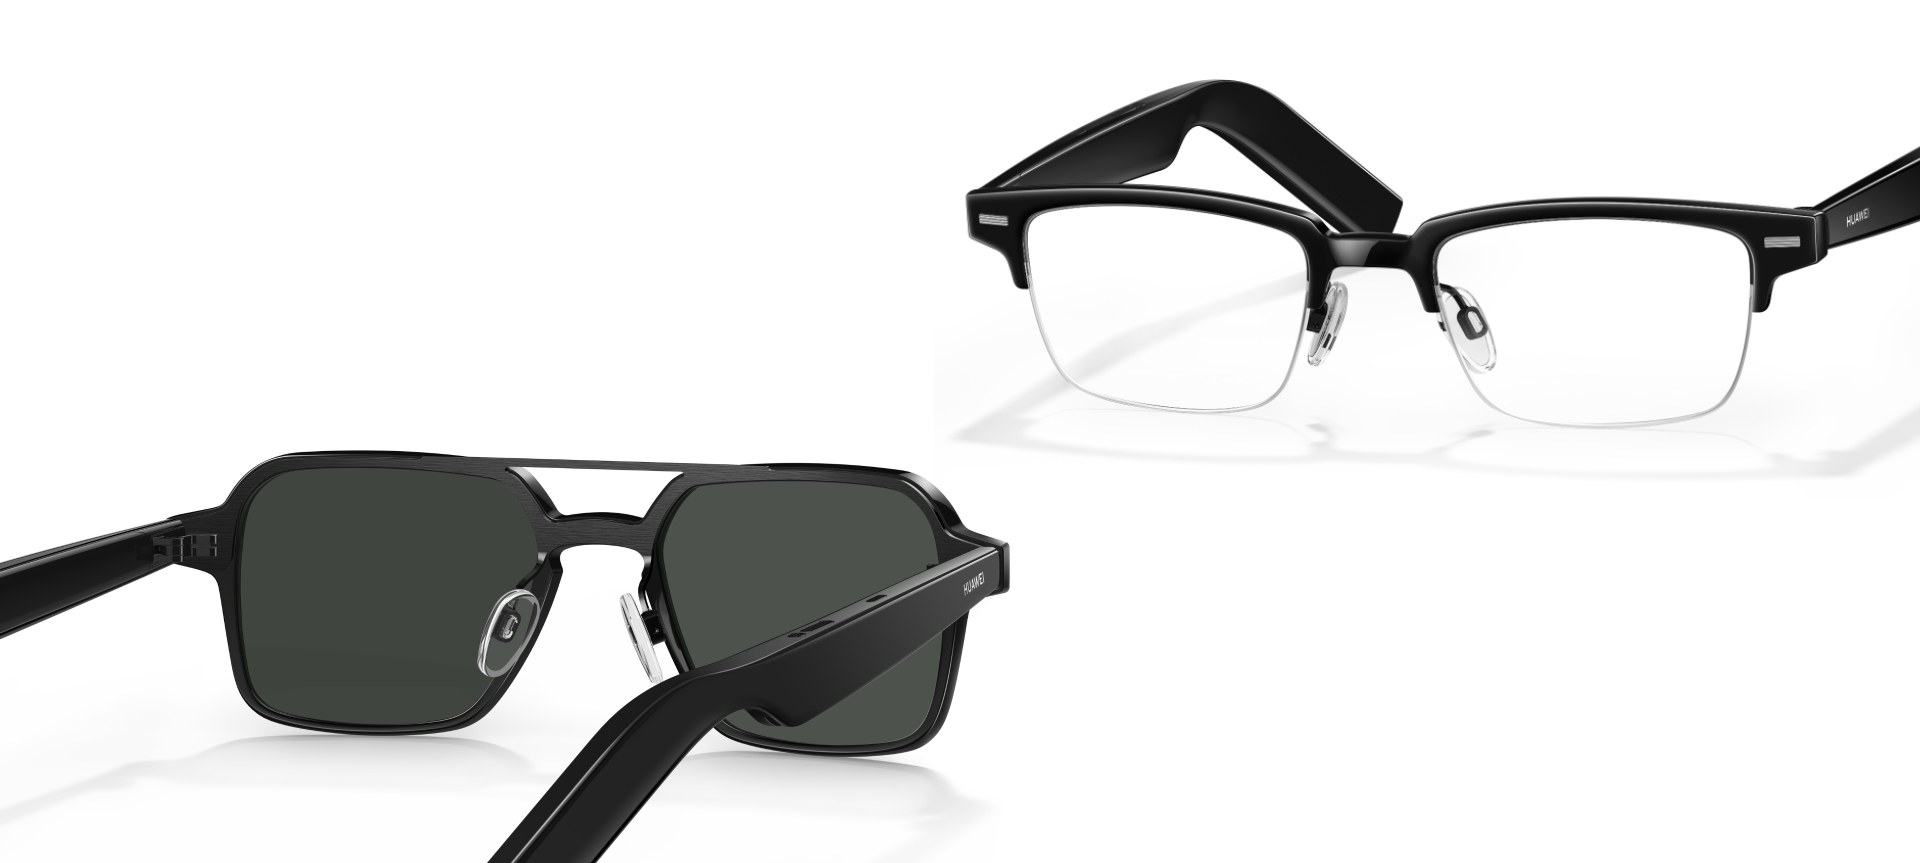 Les lunettes intelligentes Huawei Eyewear 2, dotées de haut-parleurs et de lentilles Zeiss, ont fait leur apparition sur le marché mondial.